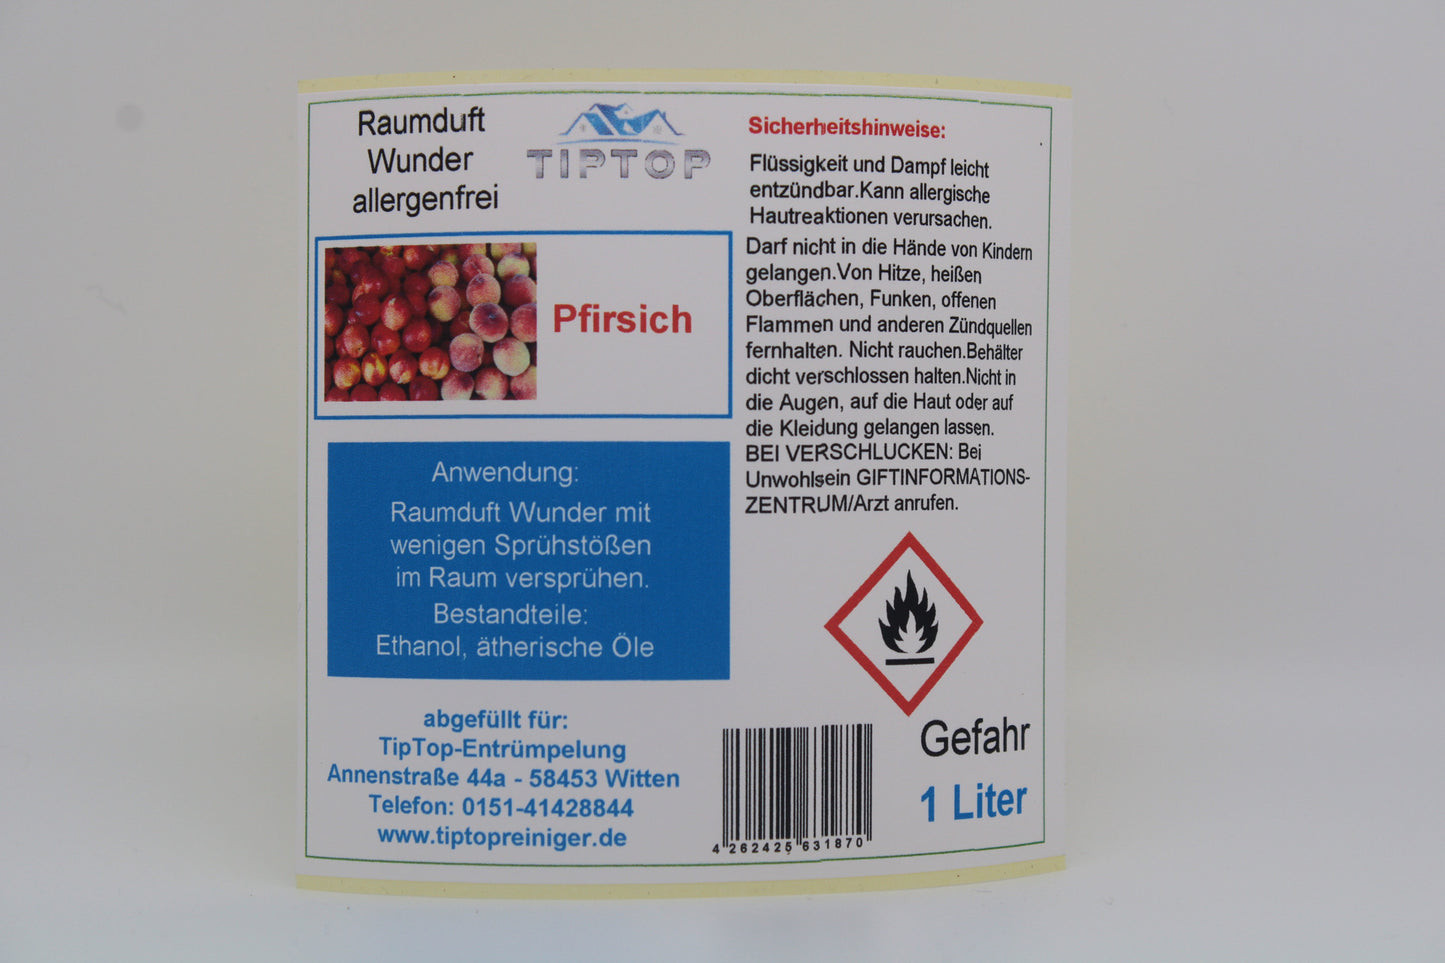 Raumduft-Wunder Allergenfrei -1 Liter- mehrere Duftnoten zur Auswahl